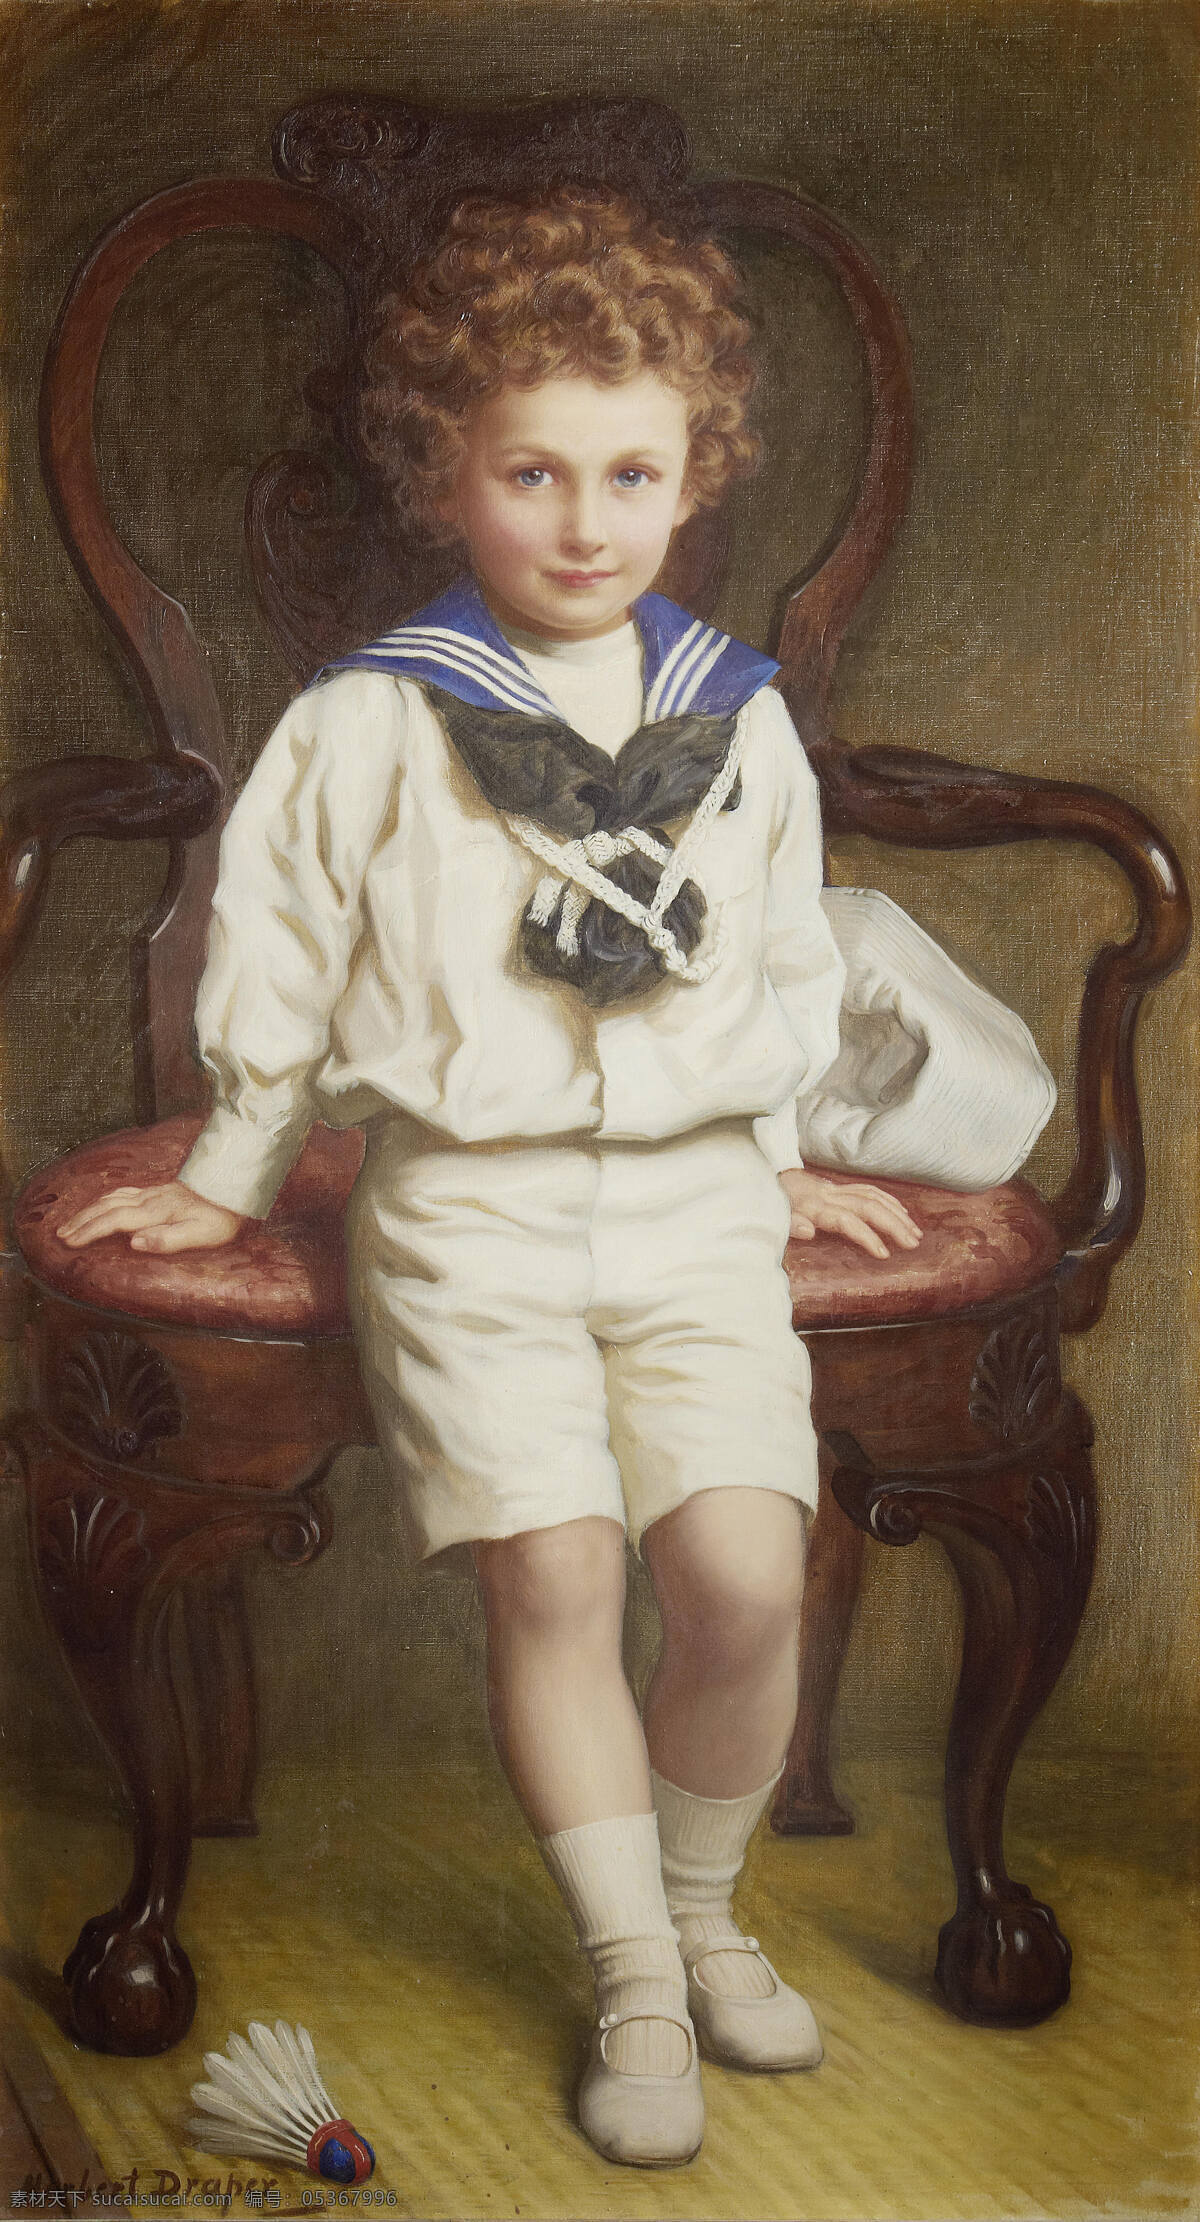 小男孩儿 贵族之家 椅子 小绅士 羽毛球 19世纪油画 油画 绘画书法 文化艺术